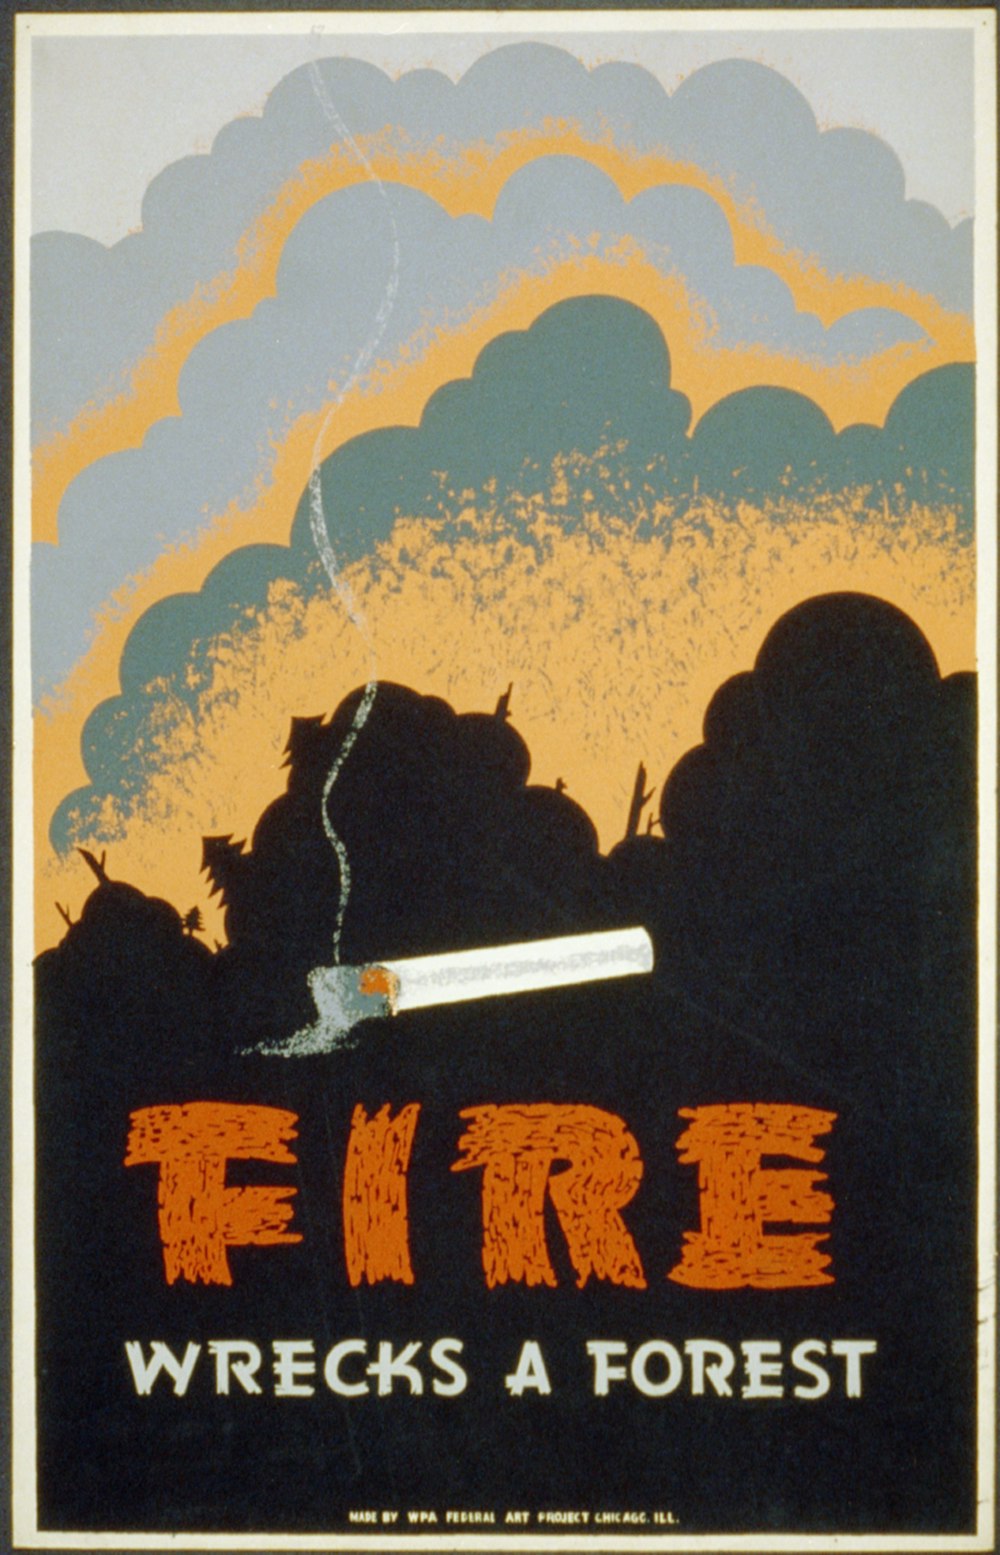 Cartel para la prevención de incendios forestales que muestra un cigarrillo encendido y un incendio forestal. 